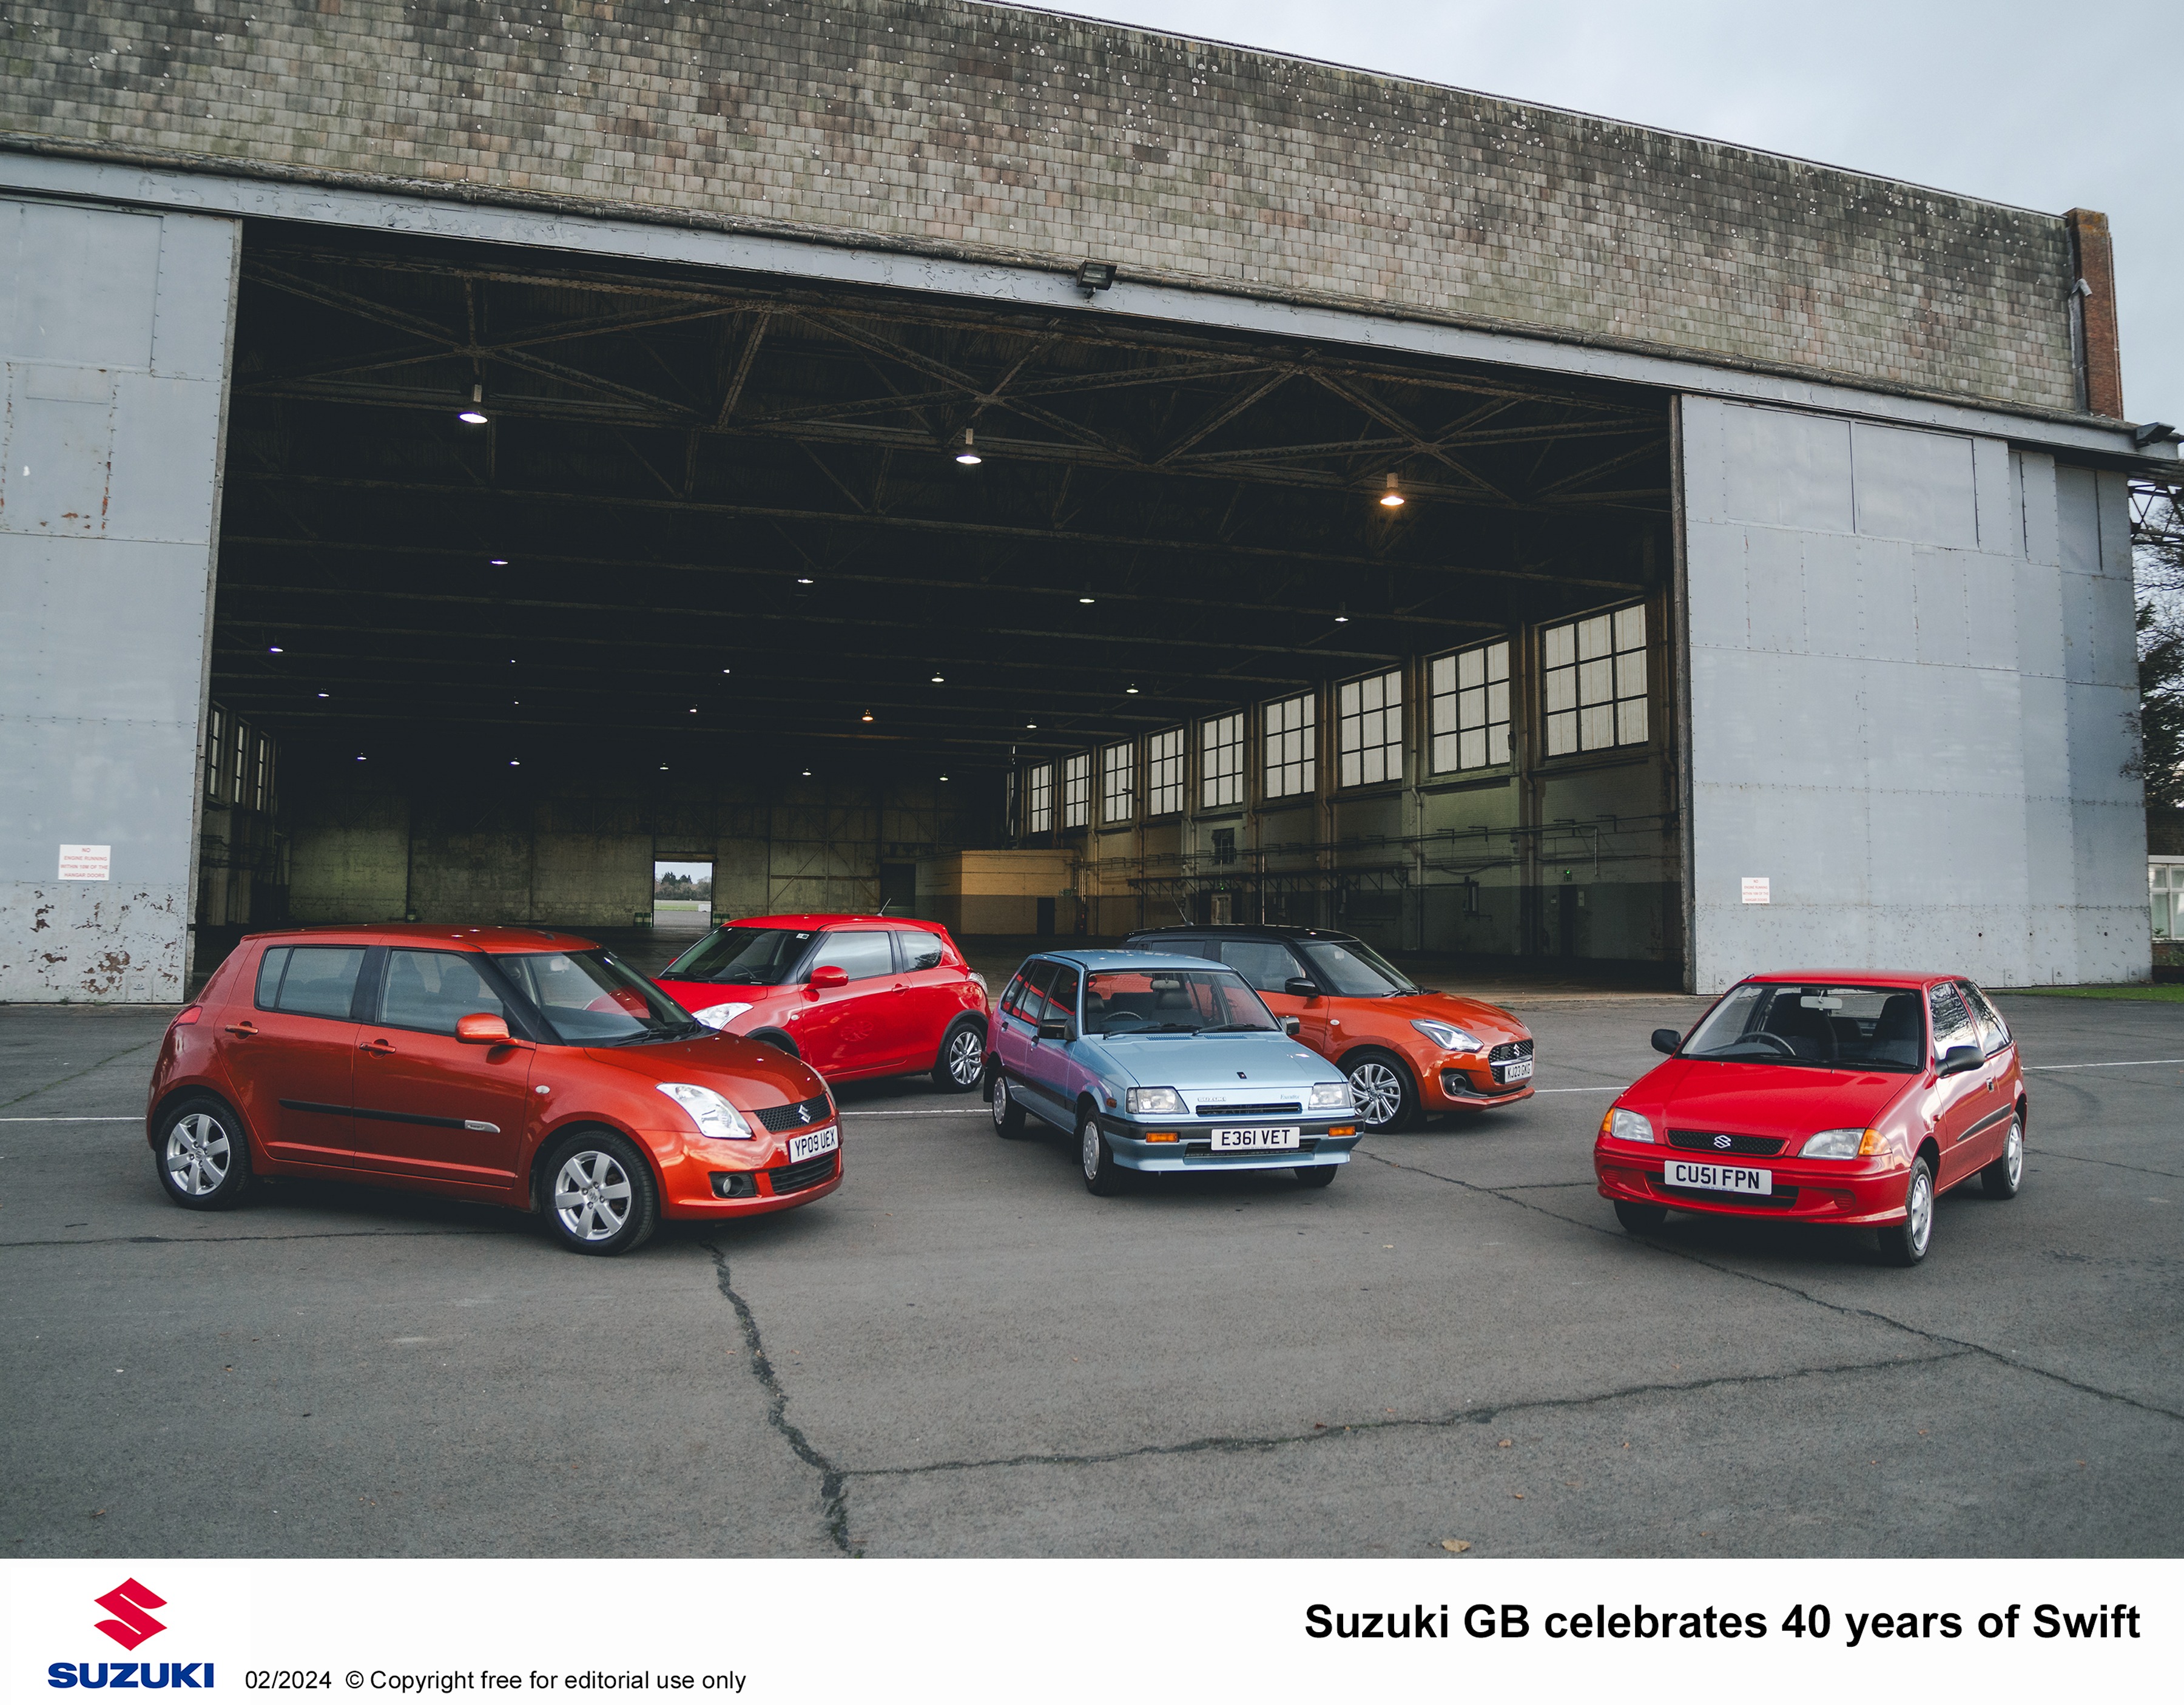 Suzuki GB celebrates 40 years of Swift